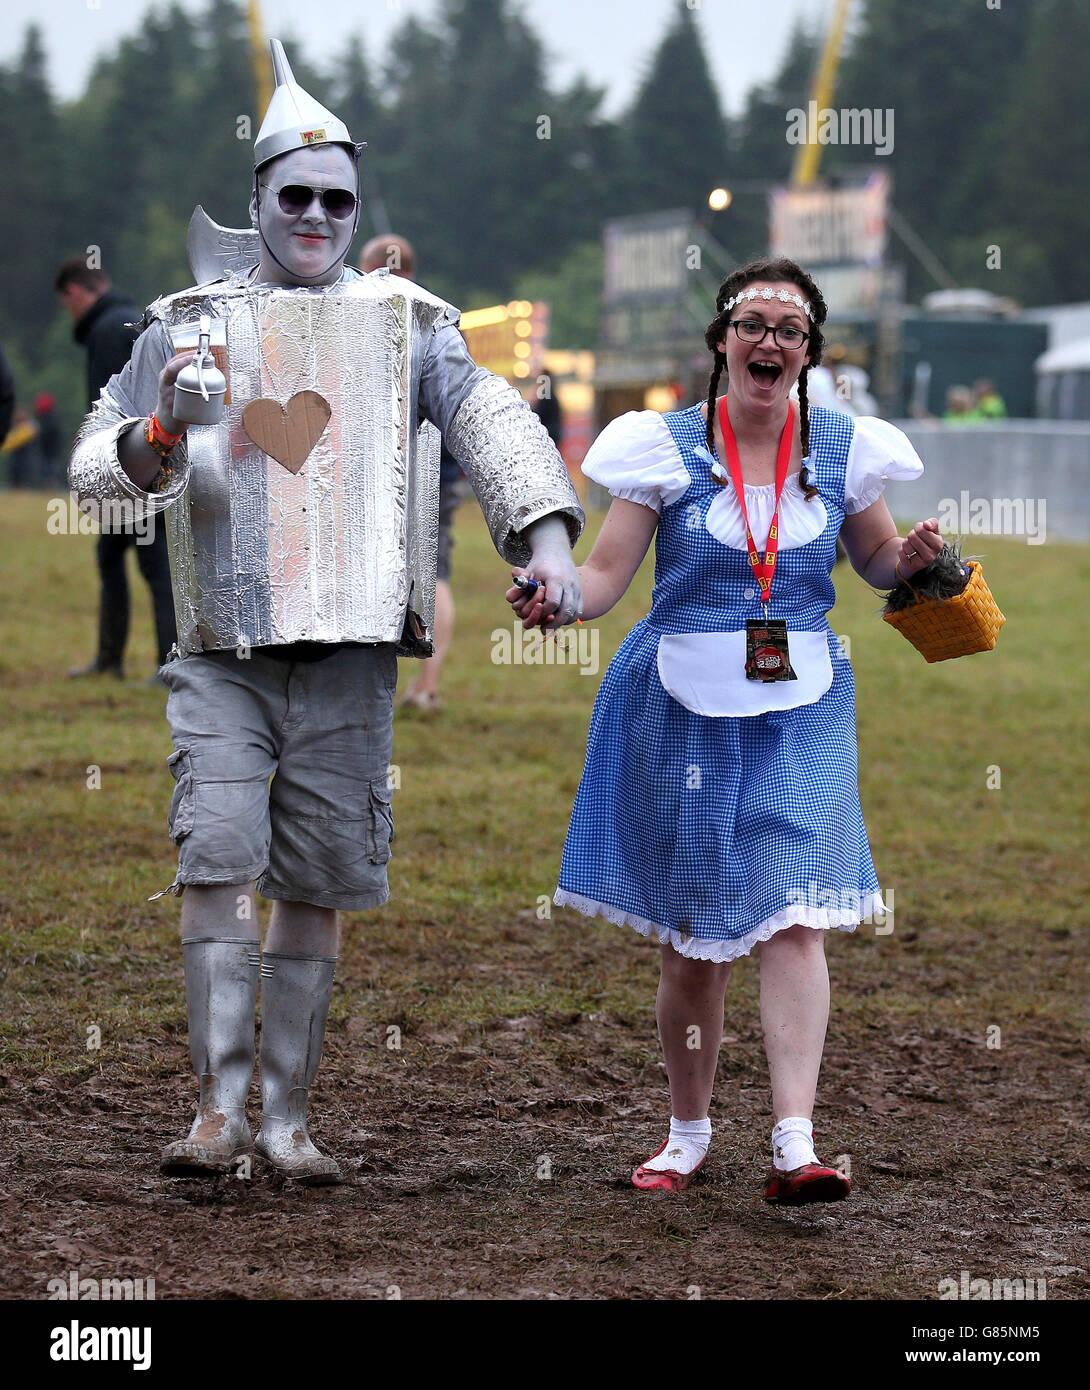 Los fans de la música Ross y Leanne Acamovic de Edimburgo con atuendo de lujo llegan al T in the Park Music Festival en Strathallan en Perthshire. Foto de stock